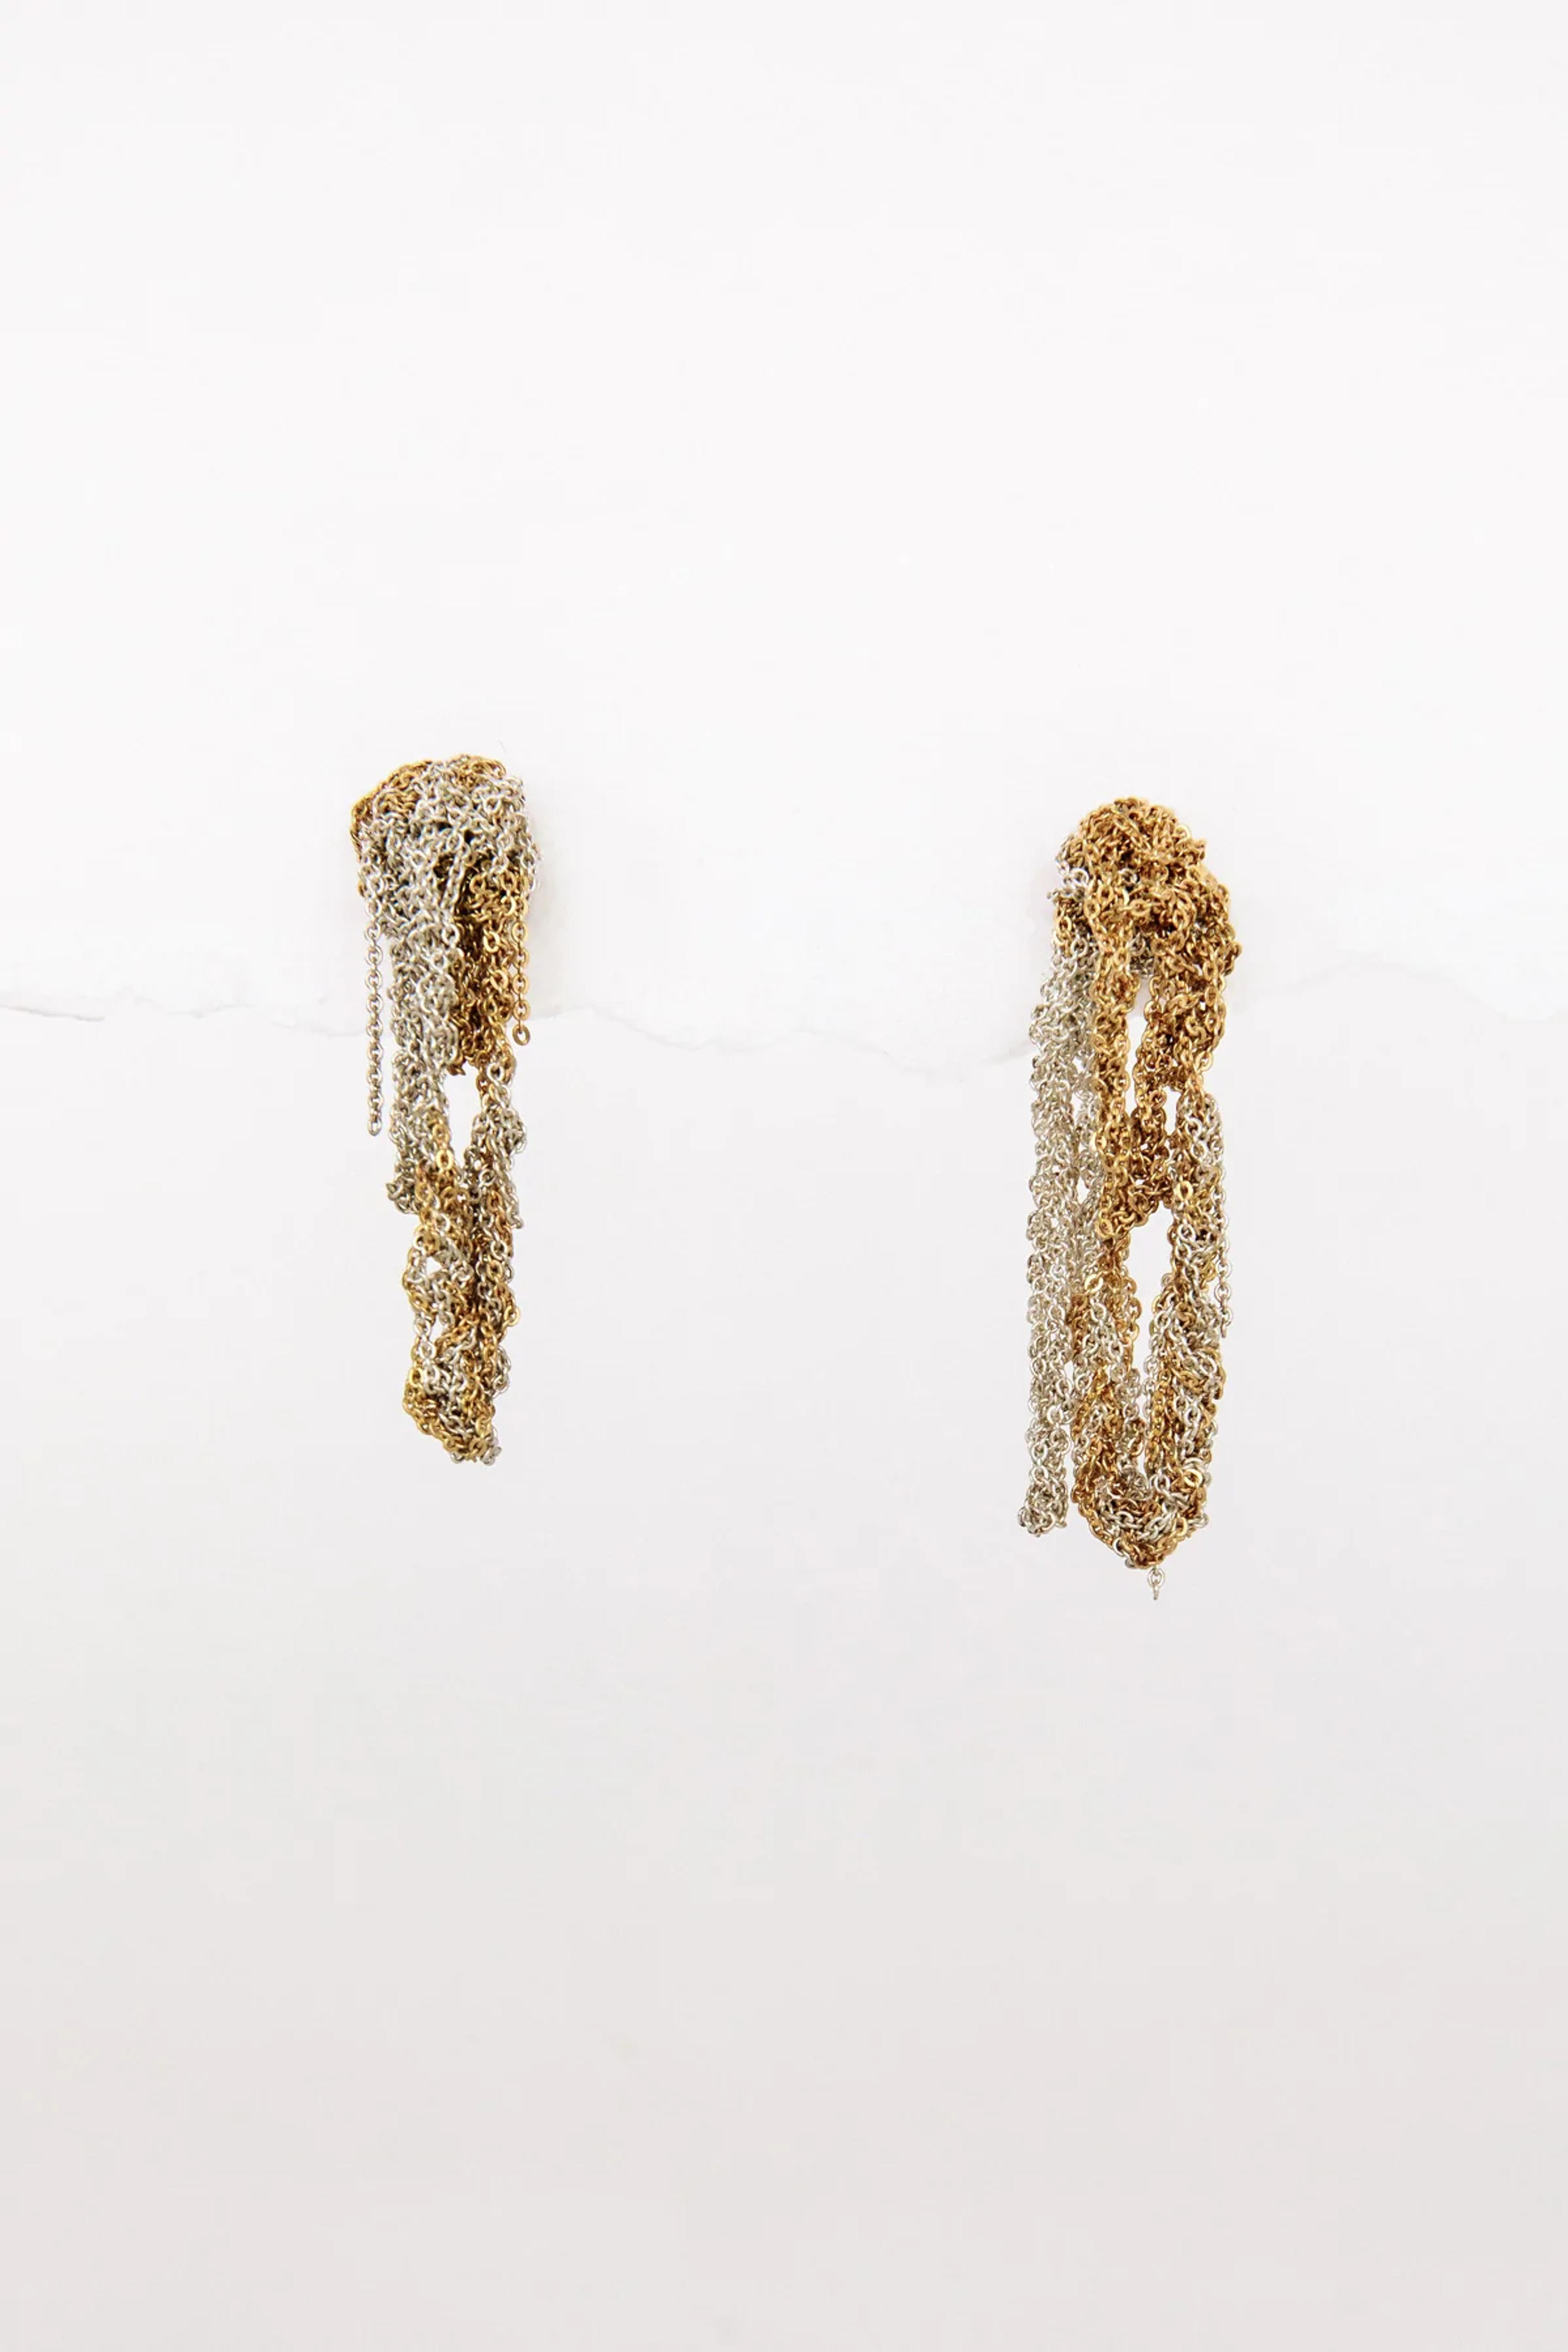 Drip Earrings, Gold + Silver